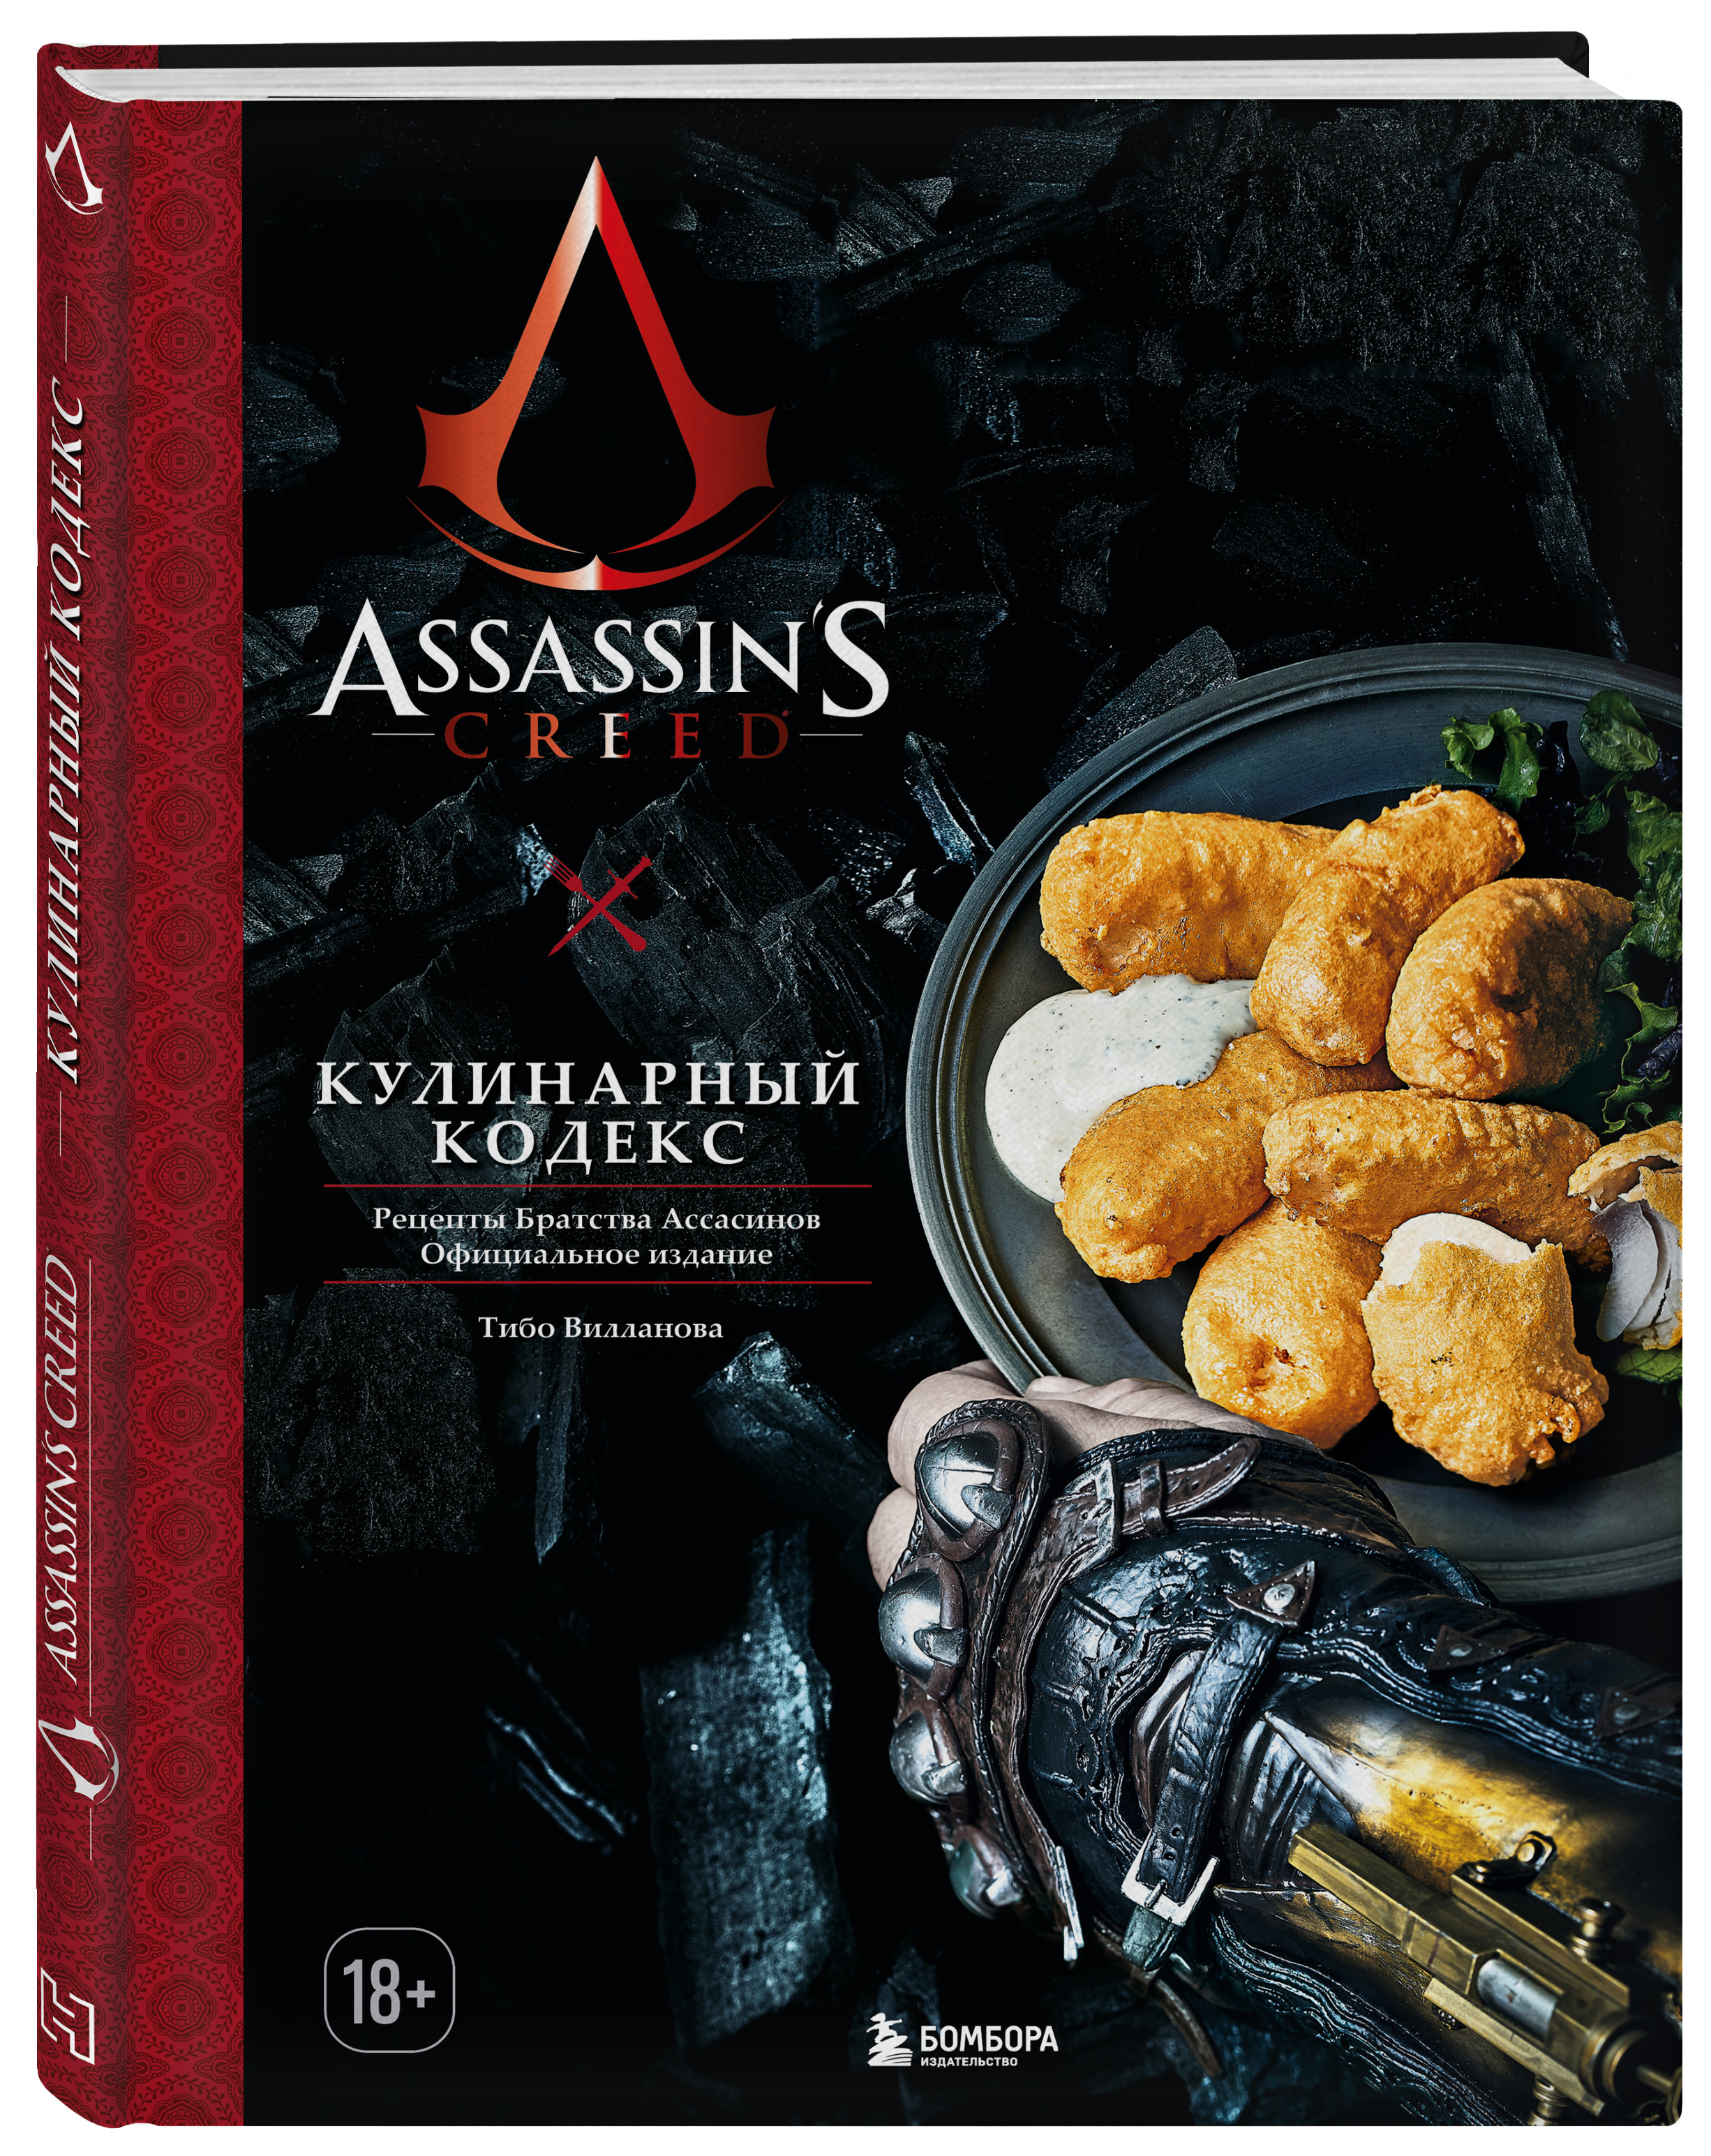 Assassin's Creed. Кулинарный кодекс: Рецепты Братства Ассасинов. Официальное издание